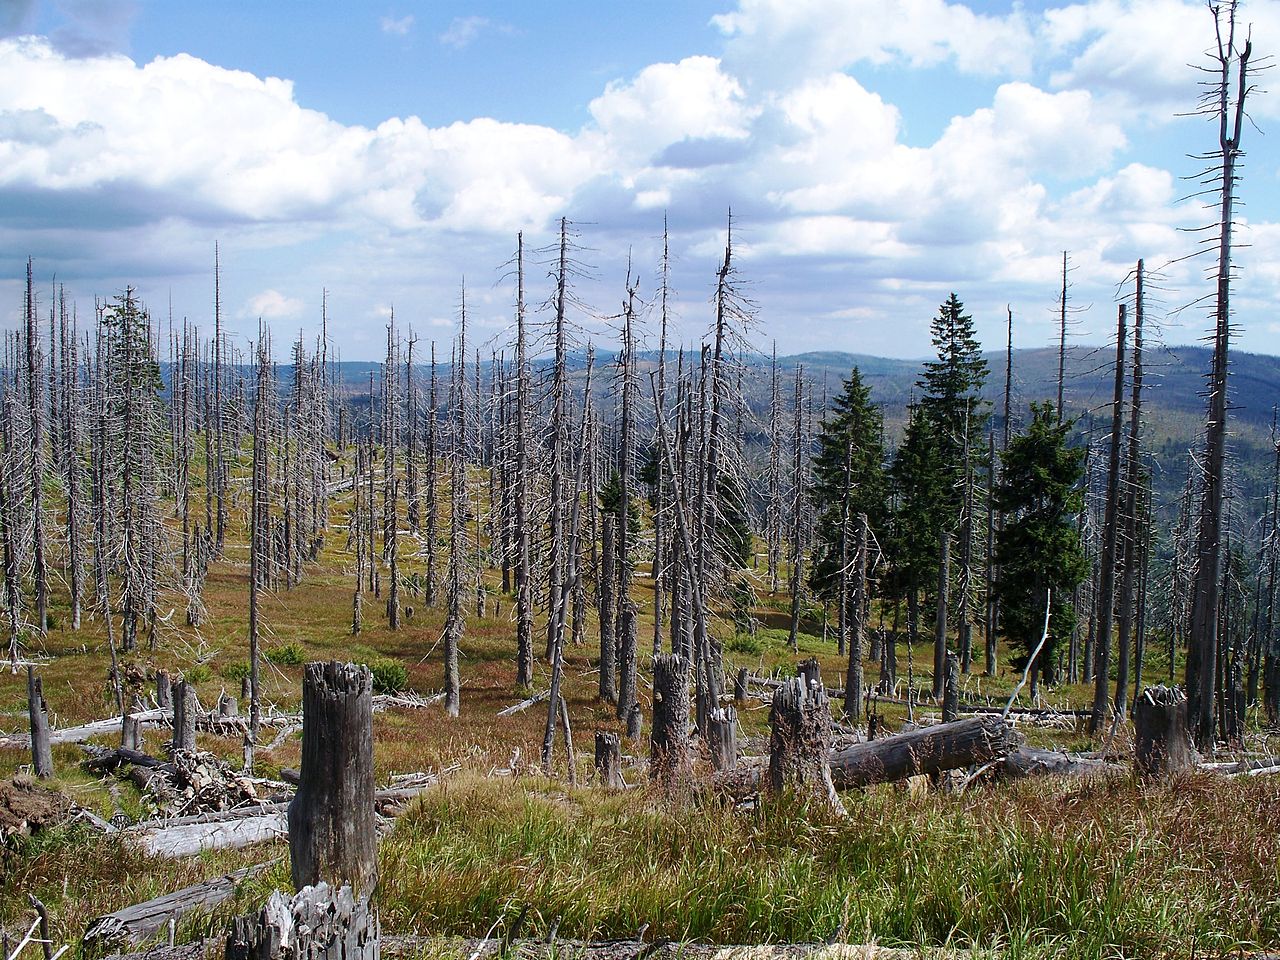 森林枯死可以打开防护棚。 当更多的光线进入时，森林会屈服于干旱和疾病。 图片来源-高对比度/维基媒体，根据CC BY 3.0 DE授权